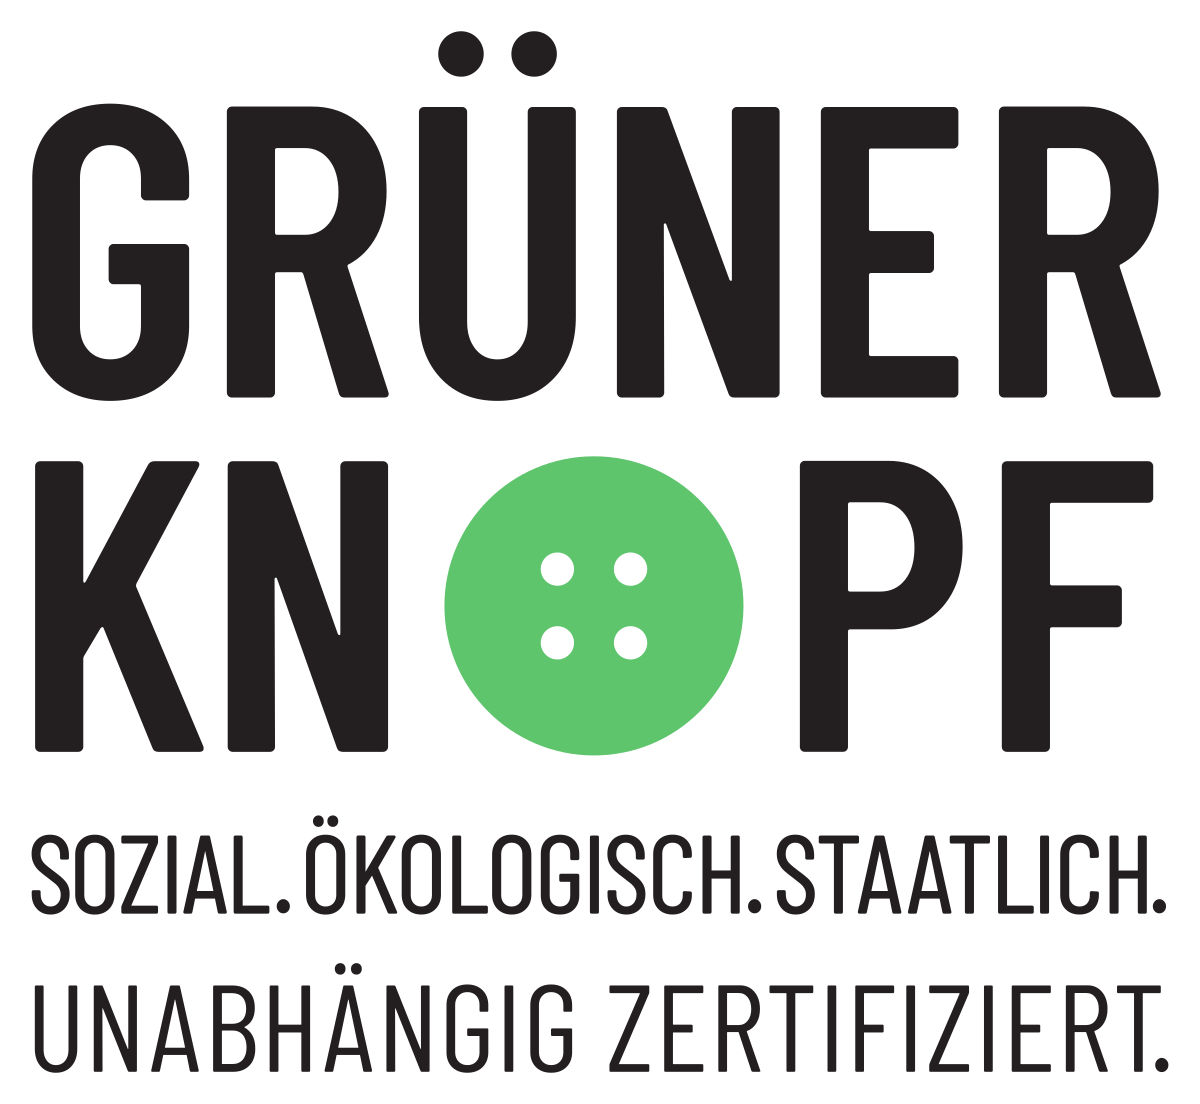 gruener-knopf